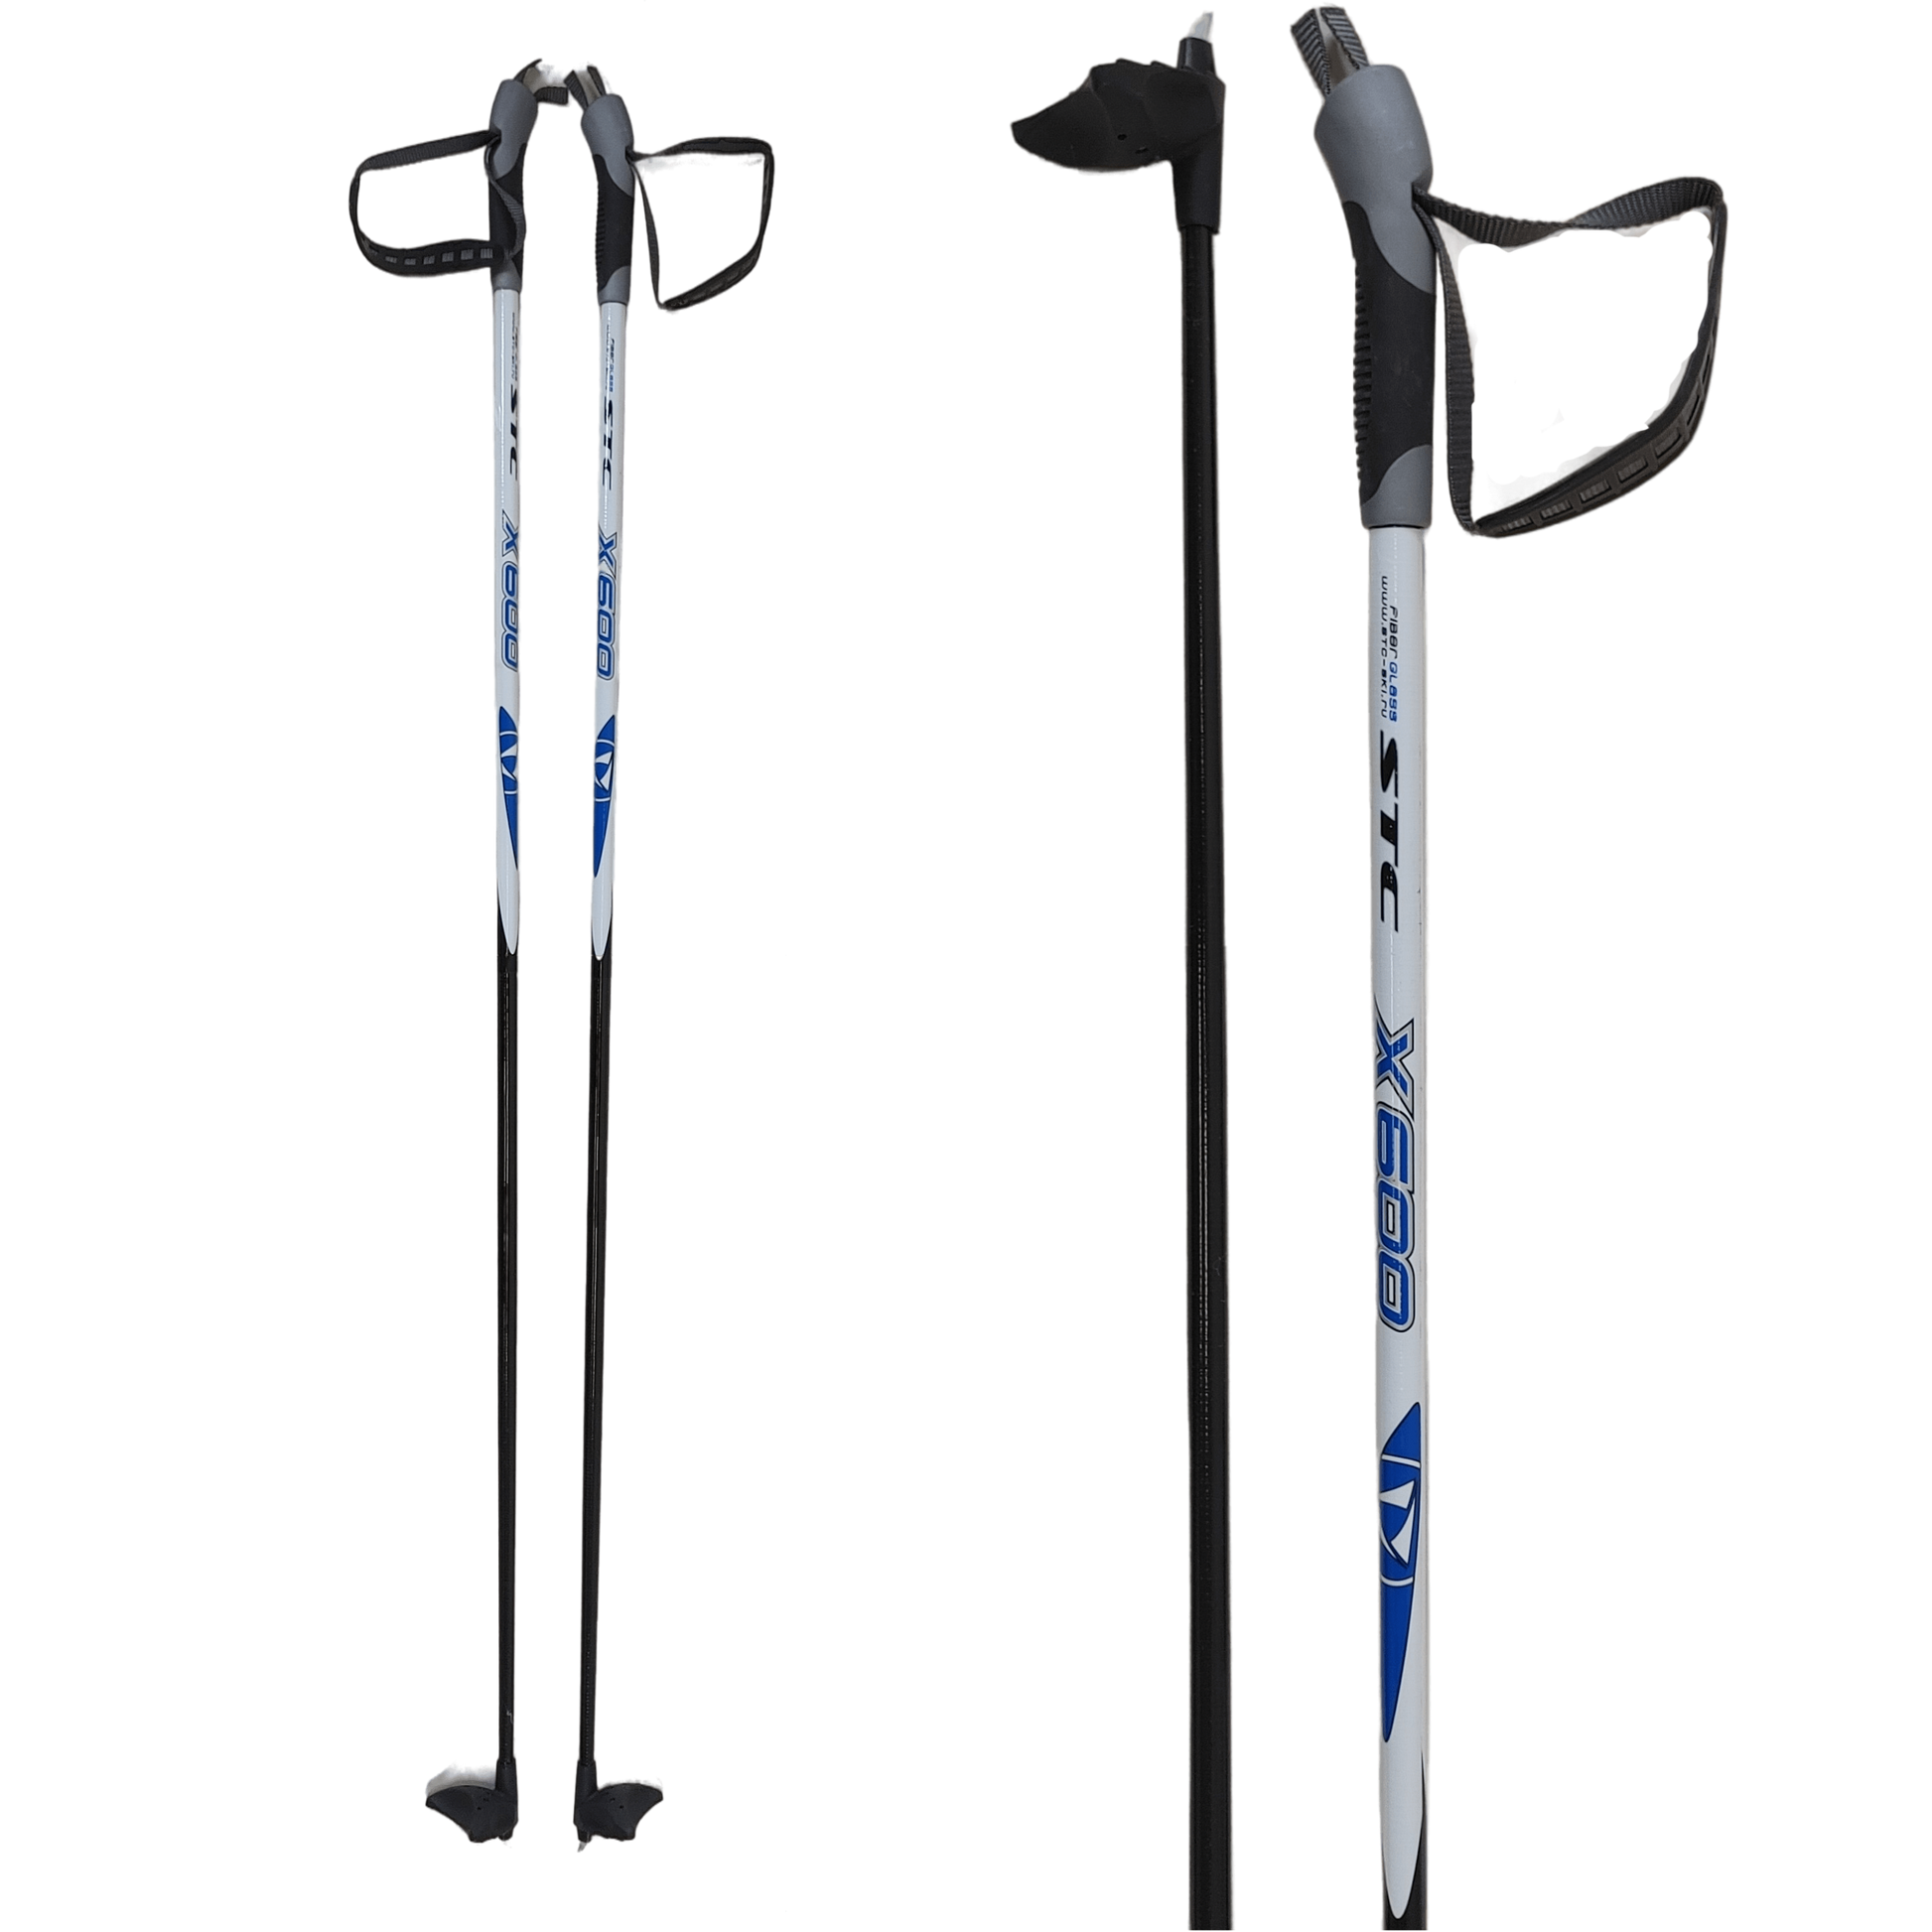 STC 100% Fibreglass Cross-Country Ski Poles